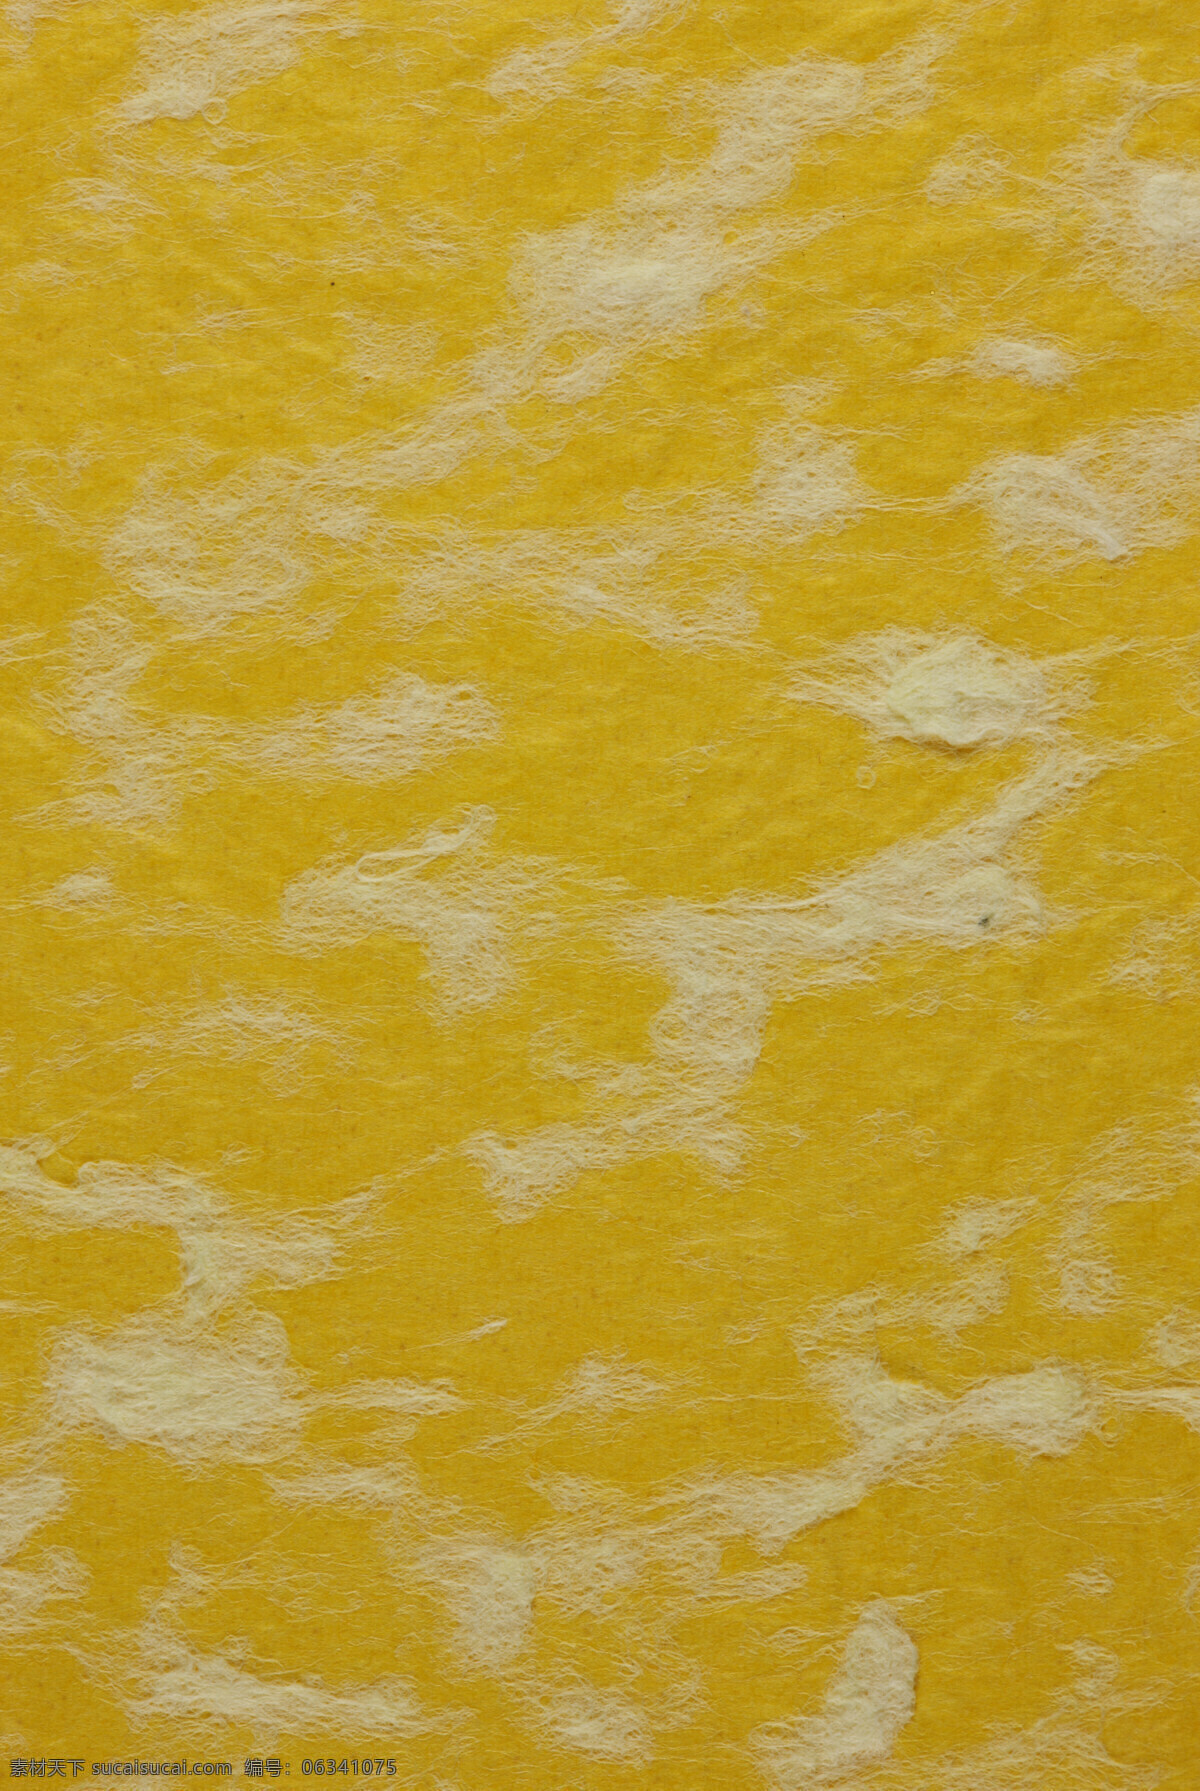 褶皱纸 艺术纸 纸 纸张 黄色纸张 纤维纸 装帧纸 特种纸 肌理效果 艺术纸张 文化艺术